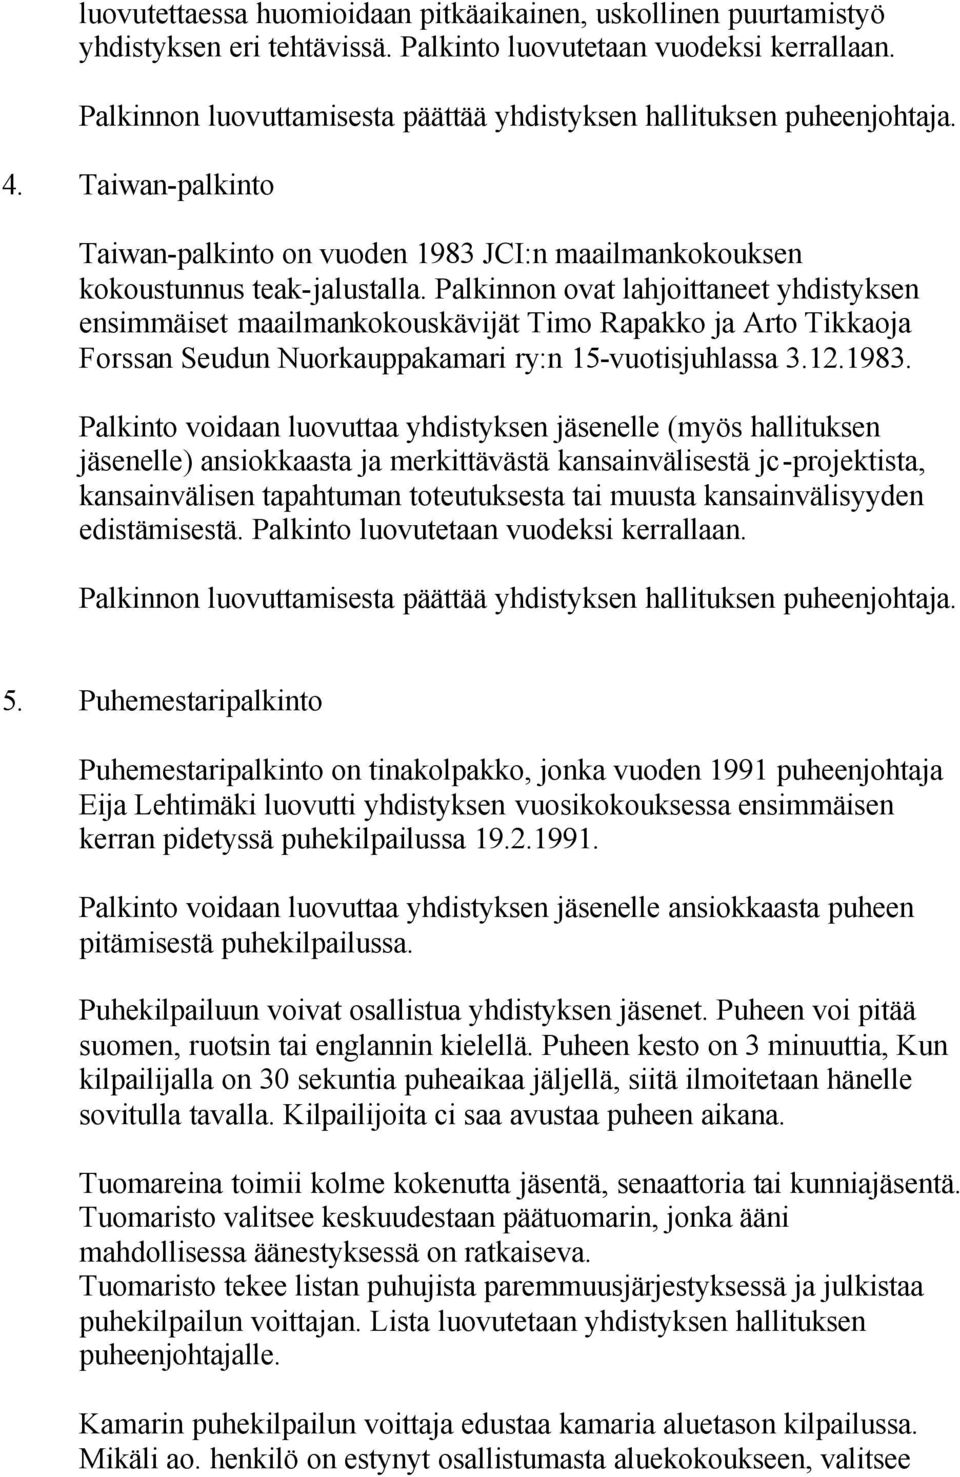 Palkinnon ovat lahjoittaneet yhdistyksen ensimmäiset maailmankokouskävijät Timo Rapakko ja Arto Tikkaoja Forssan Seudun Nuorkauppakamari ry:n 15-vuotisjuhlassa 3.12.1983.